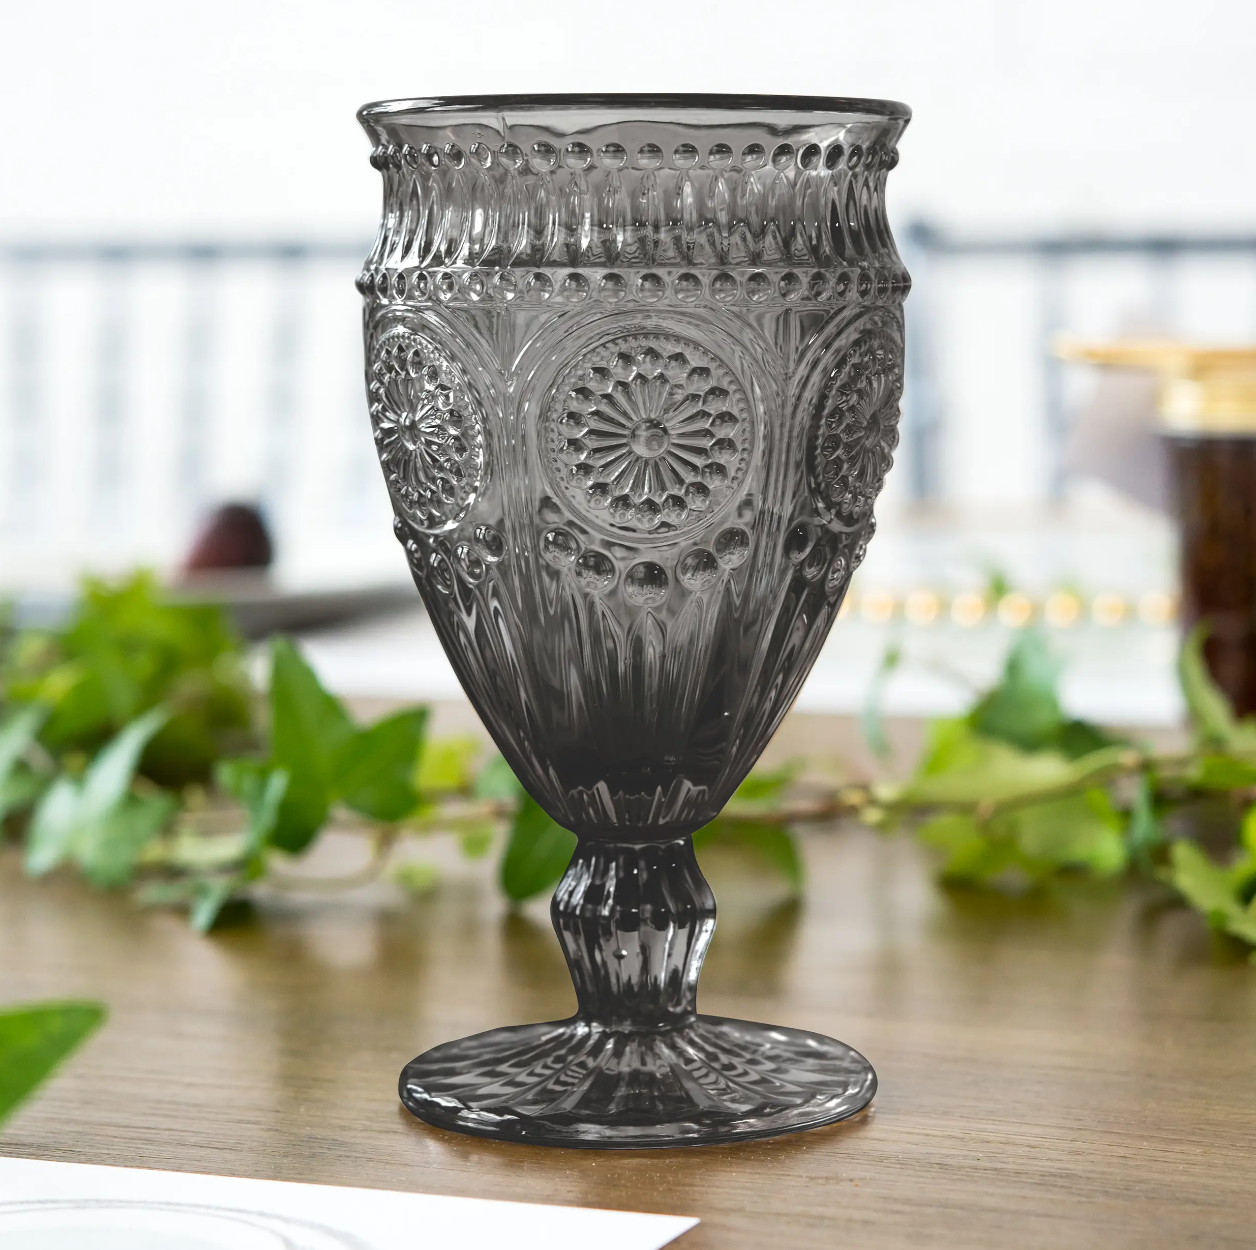 Vintage Style Pressed Glass Wine Goblet - Black